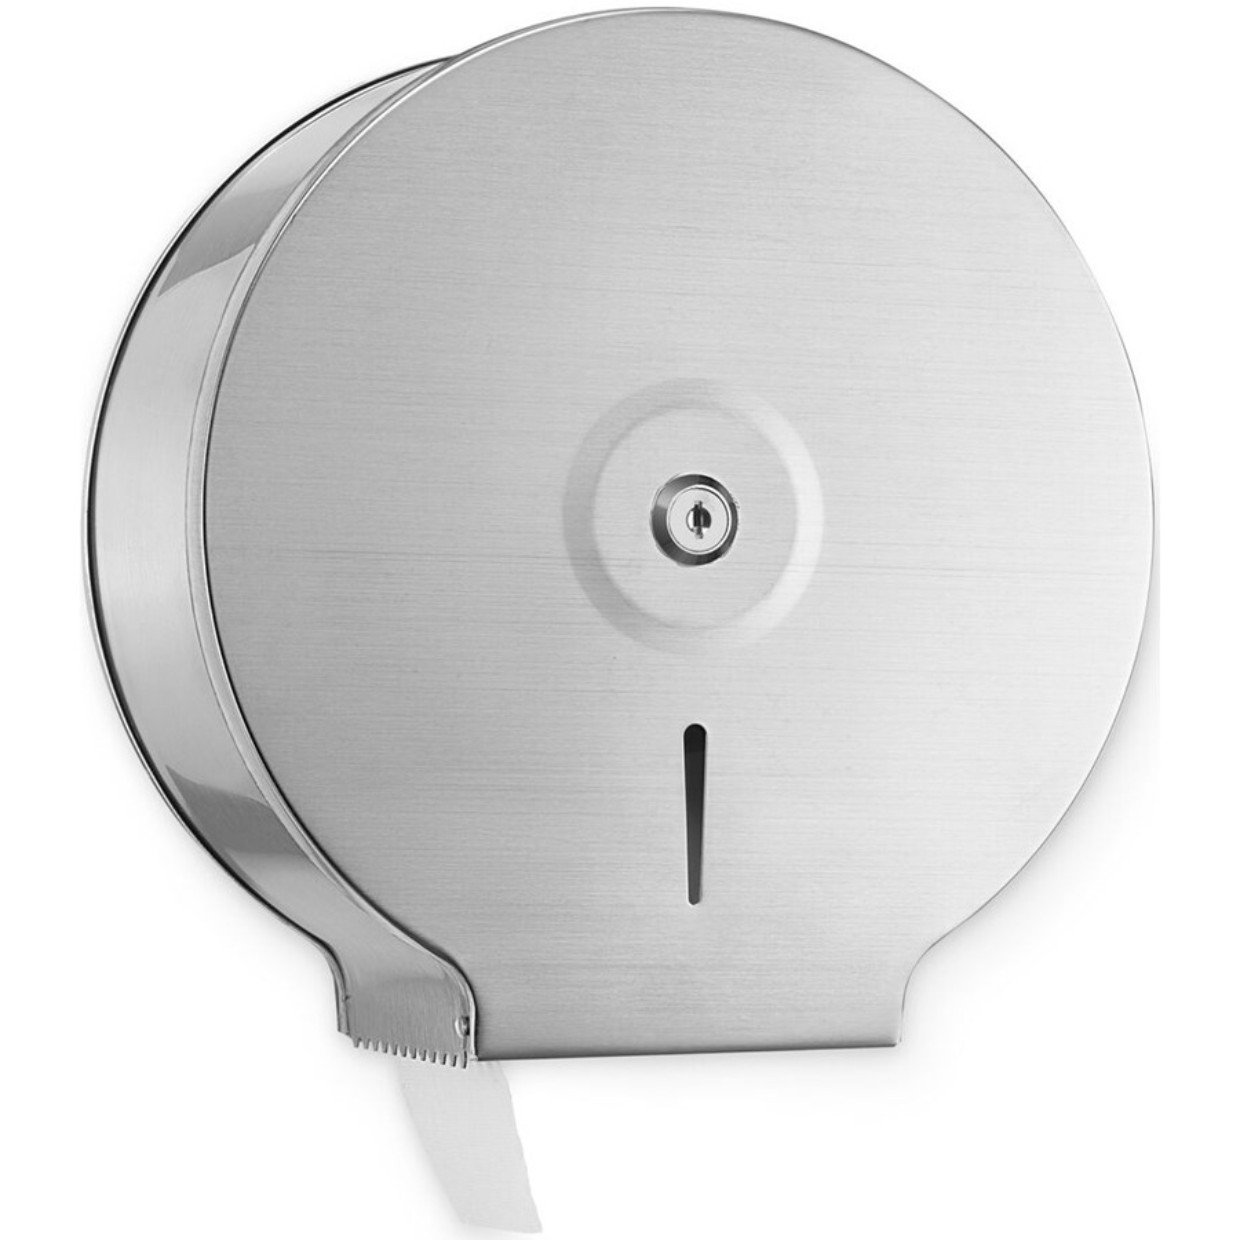 Stainless Steel Jumbo Toilet Tissue Dispenser